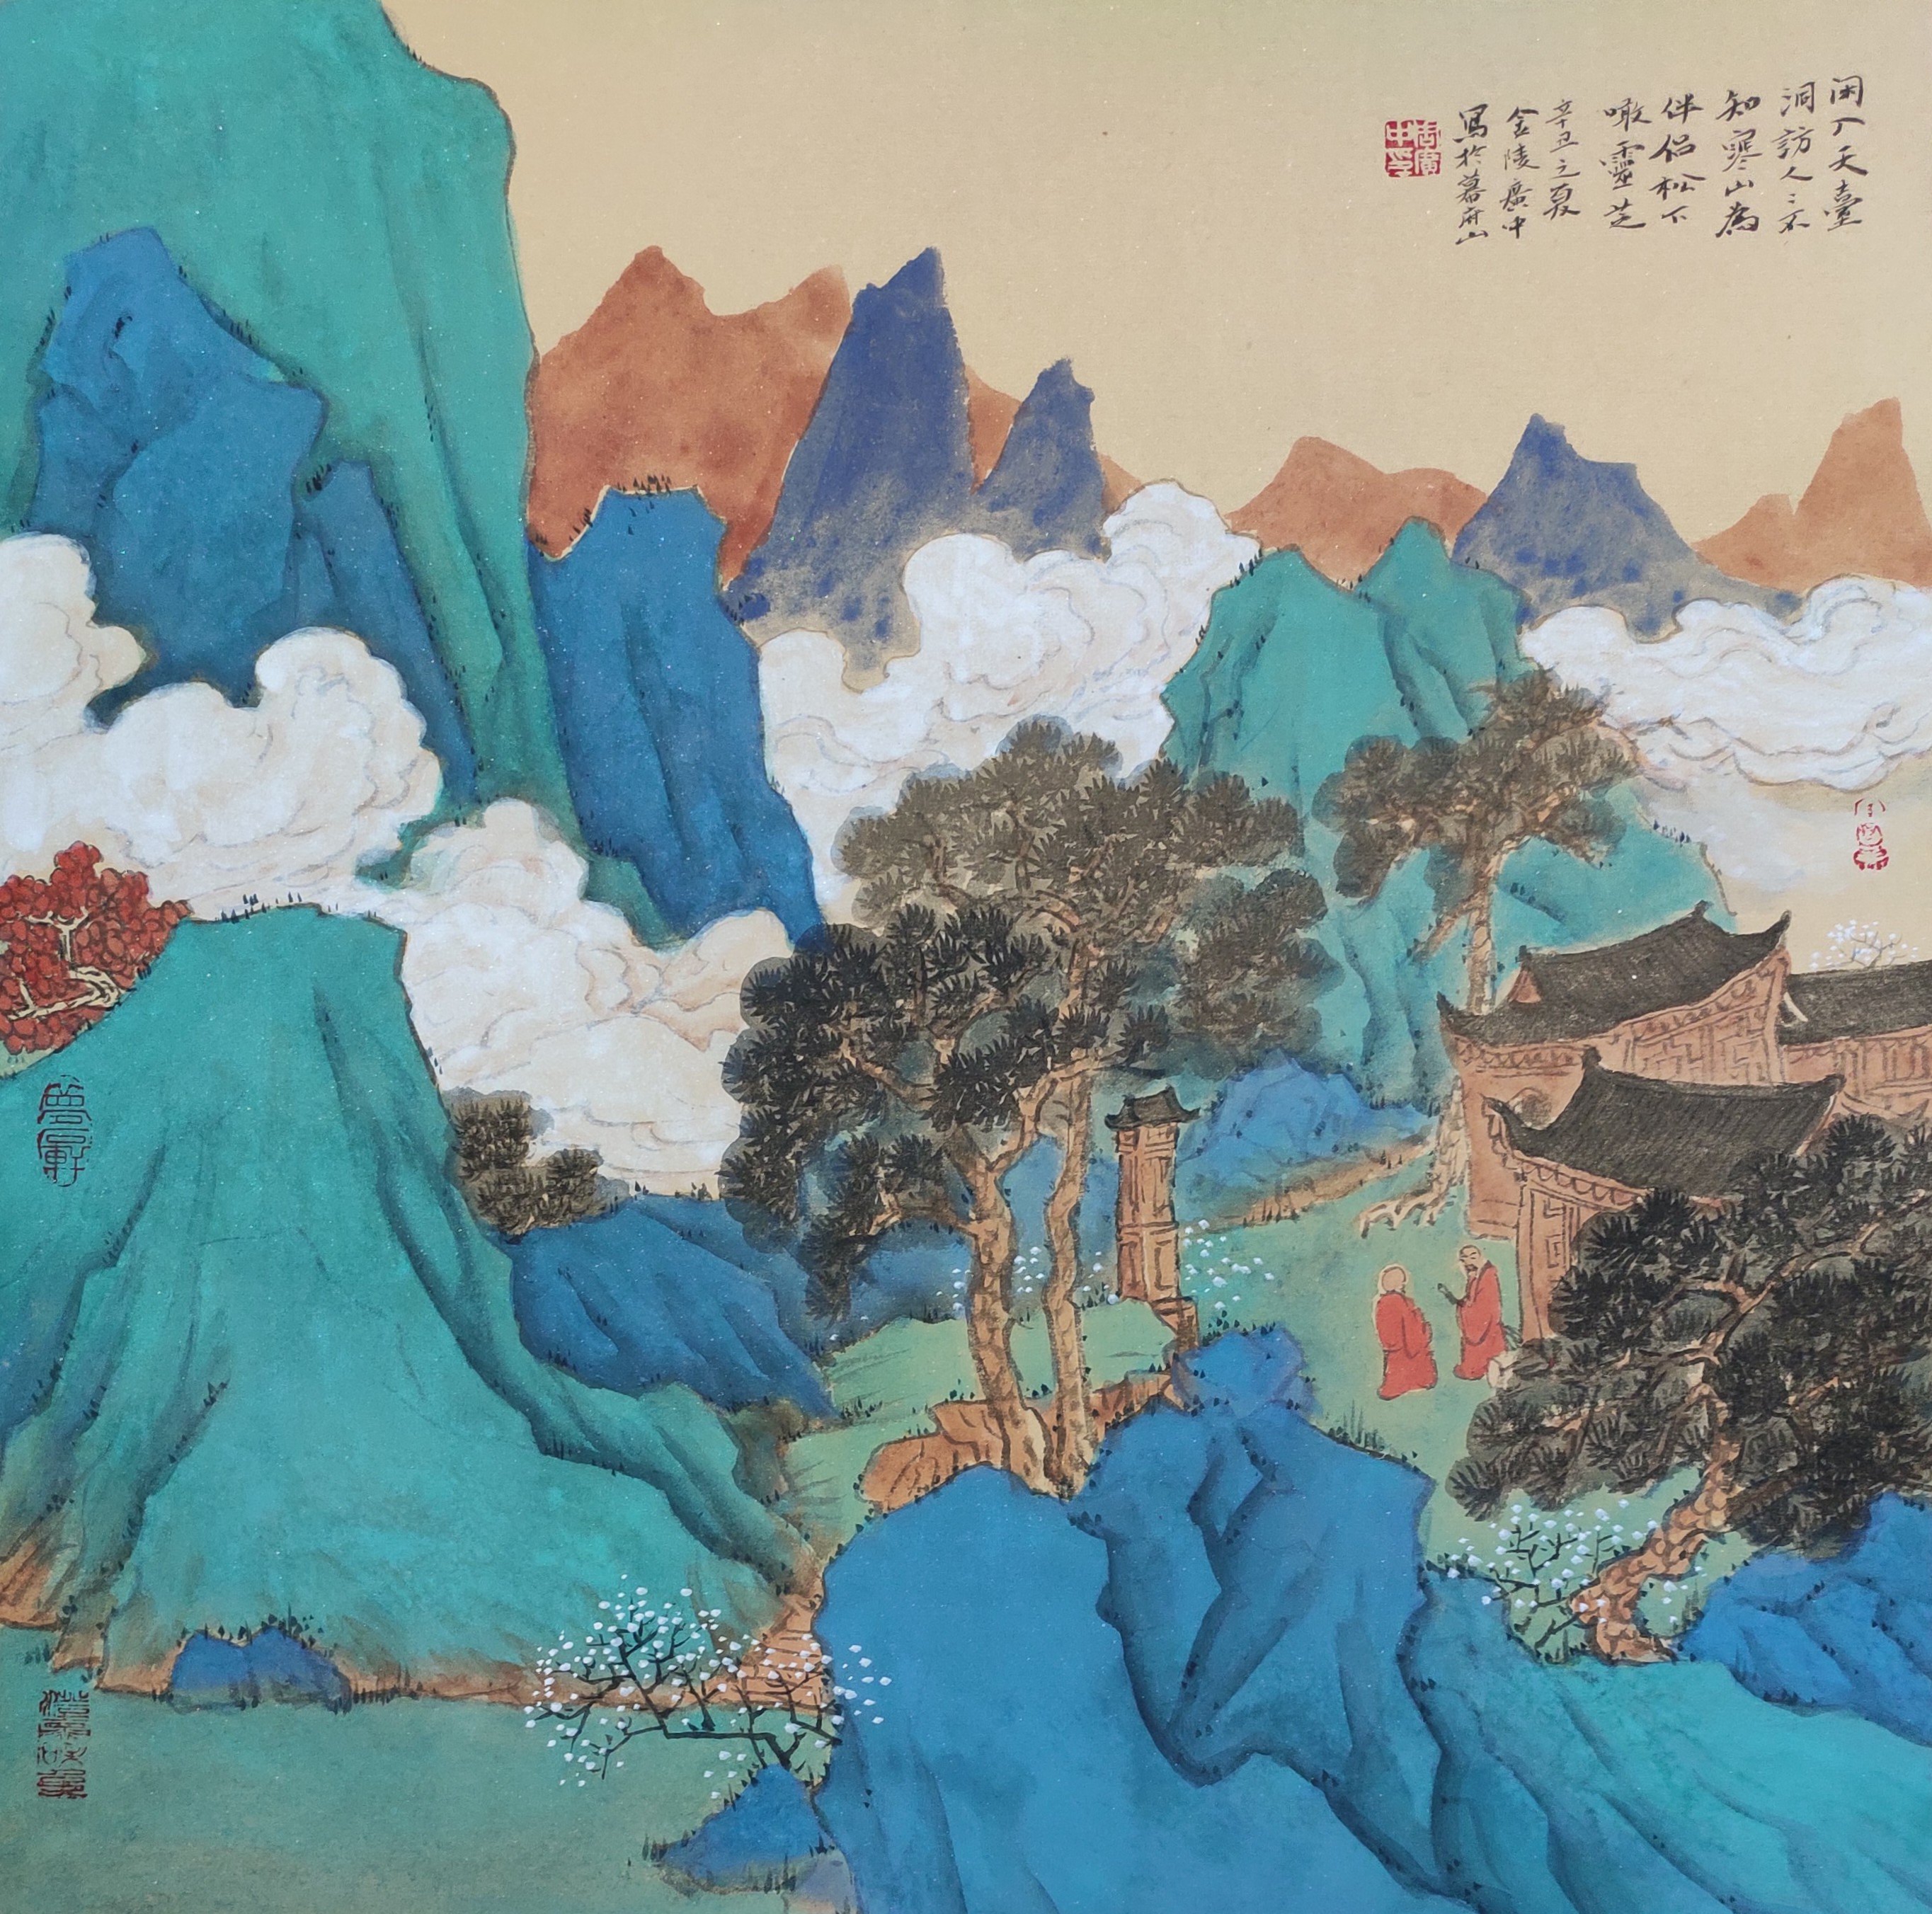 画中贵族—青绿山水周广忠作品系列之一